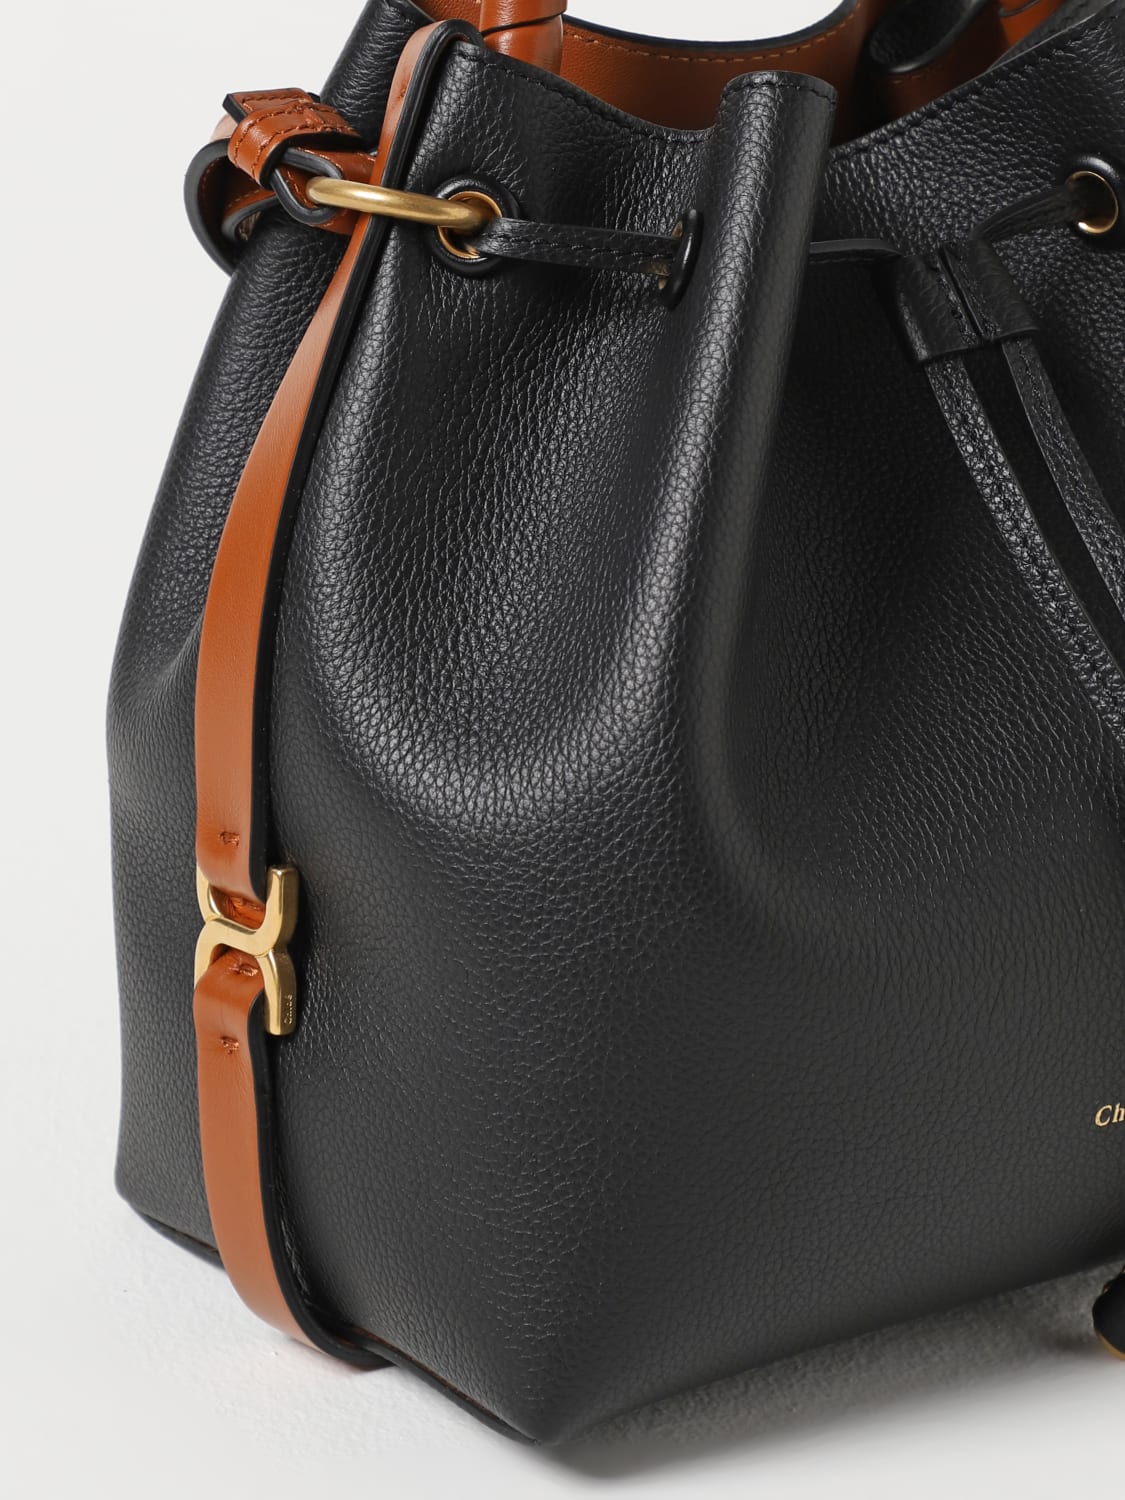 CHLOÉ: Marcie bag in grained leather - Black | Chloé handbag ...